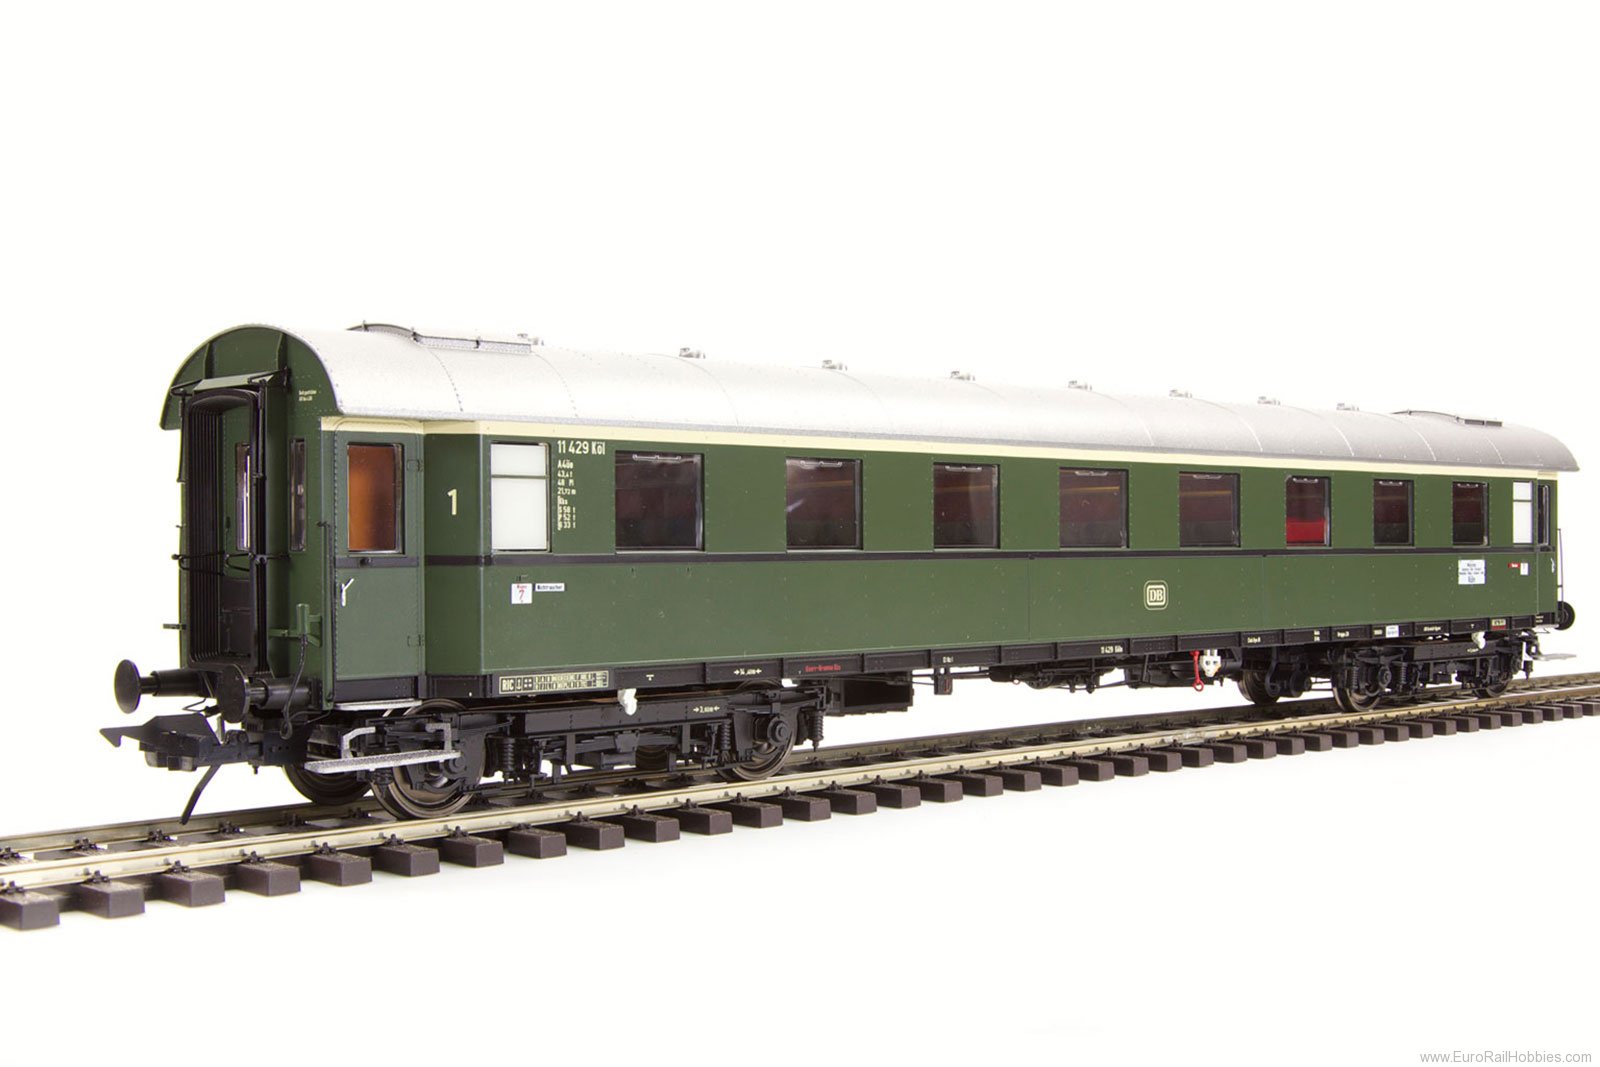 Lenz 41250.01 express train wagon size 29, 1st class A4ue-2